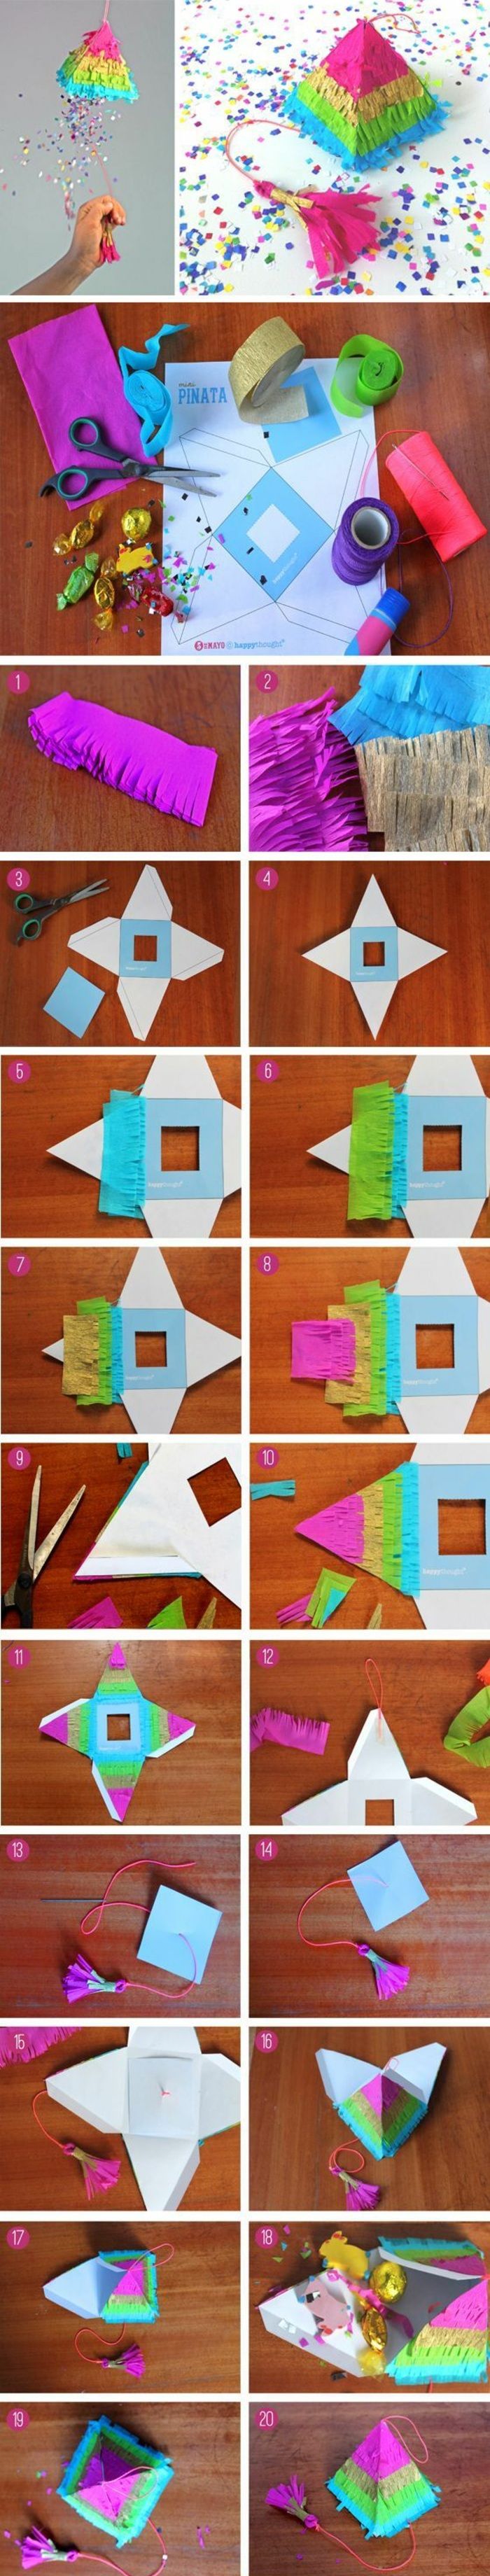 Zrobić małą piramidę z tektury, kolorowy papier, nożyczki